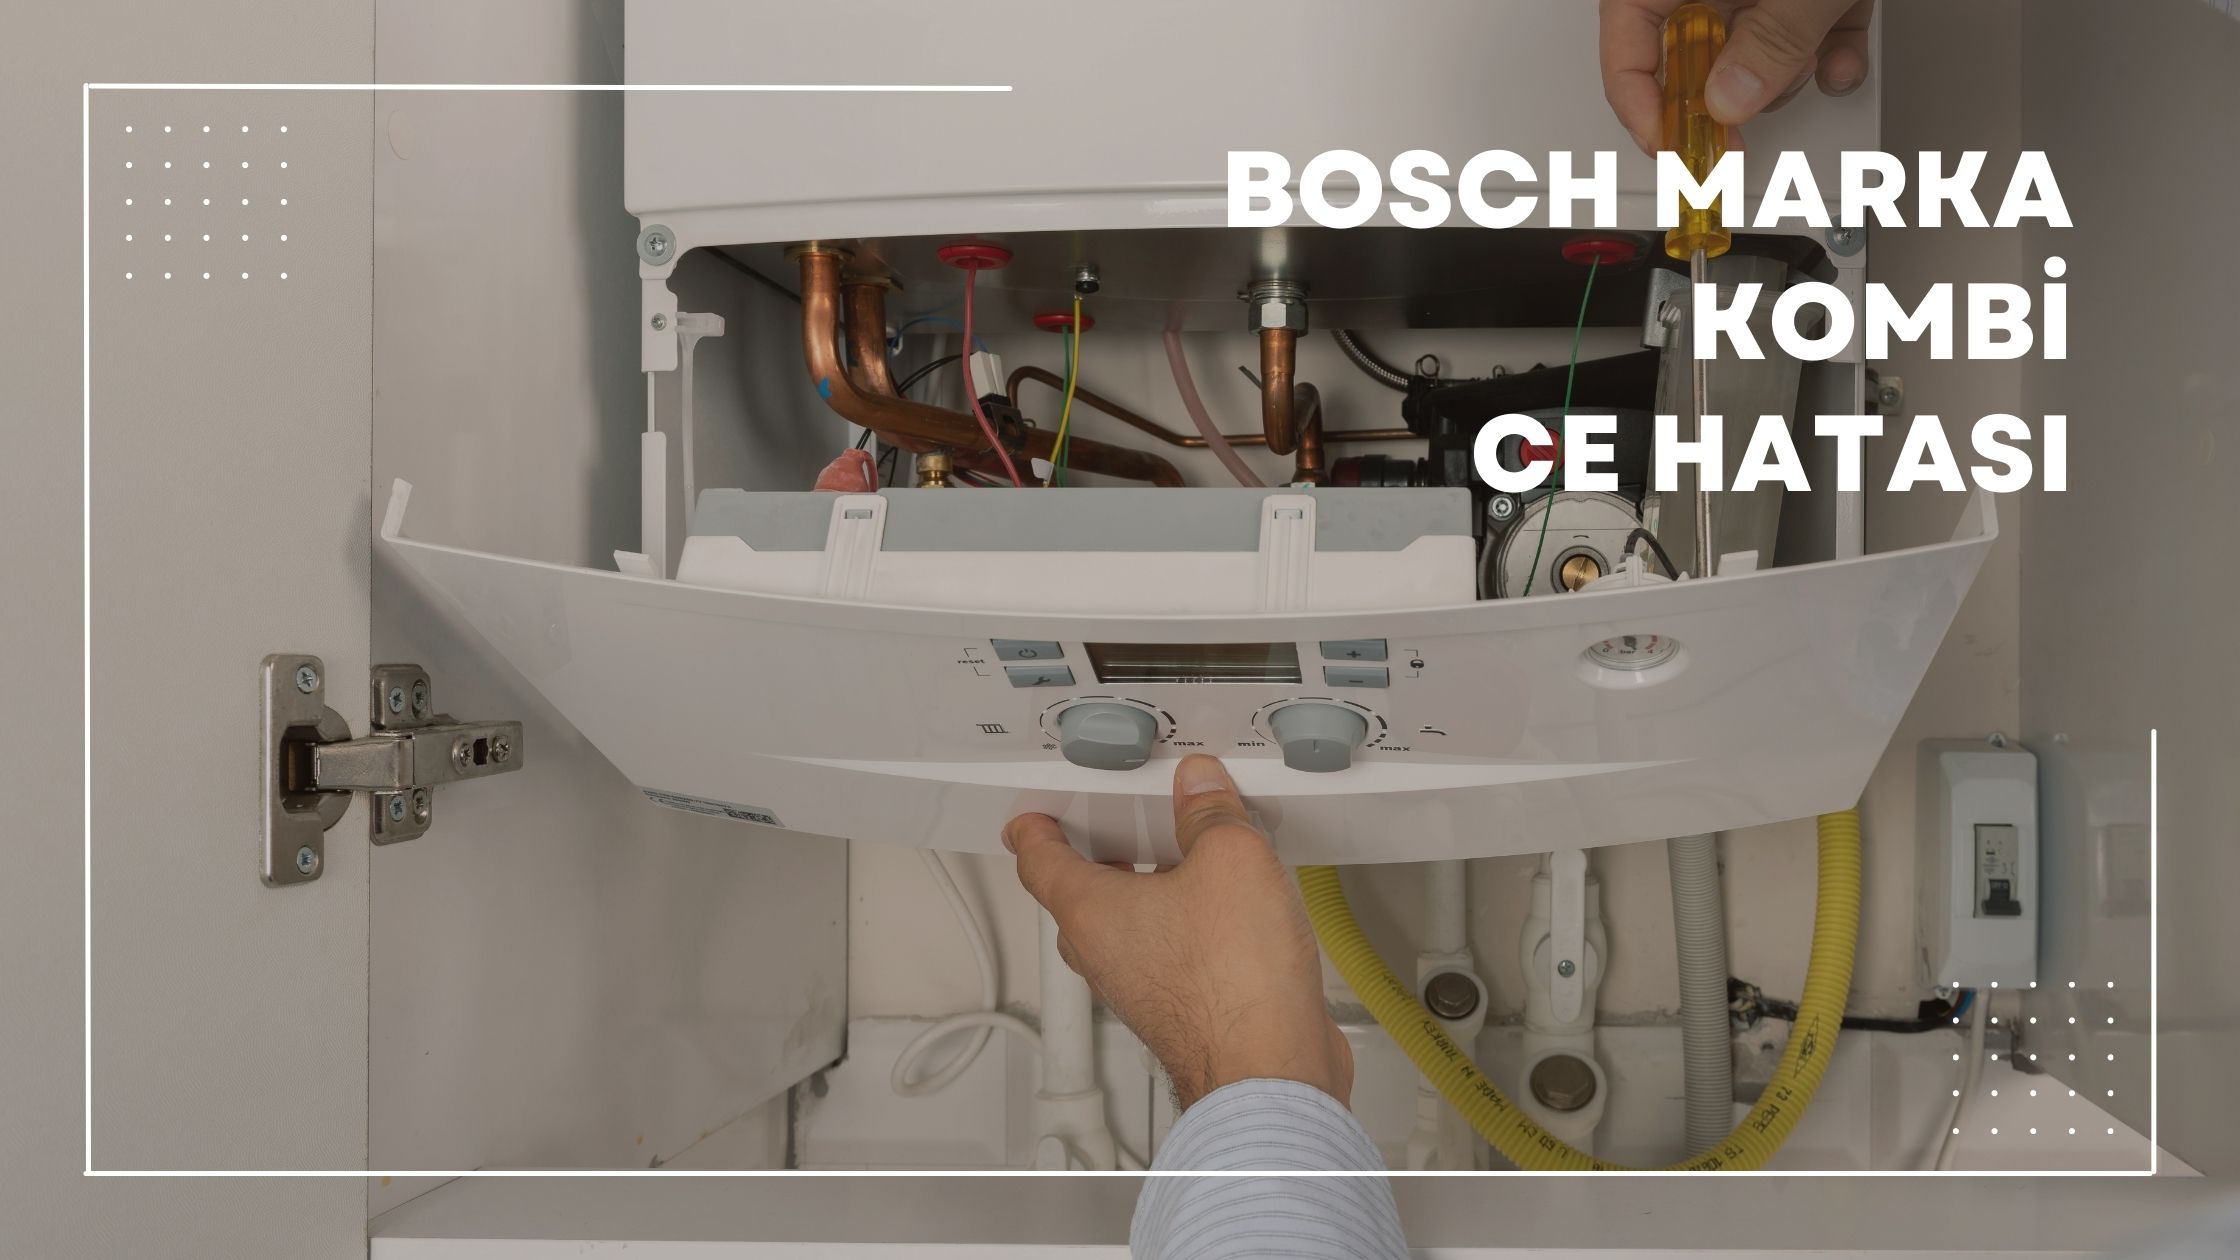 Bosch Marka Kombi Ce Hatası